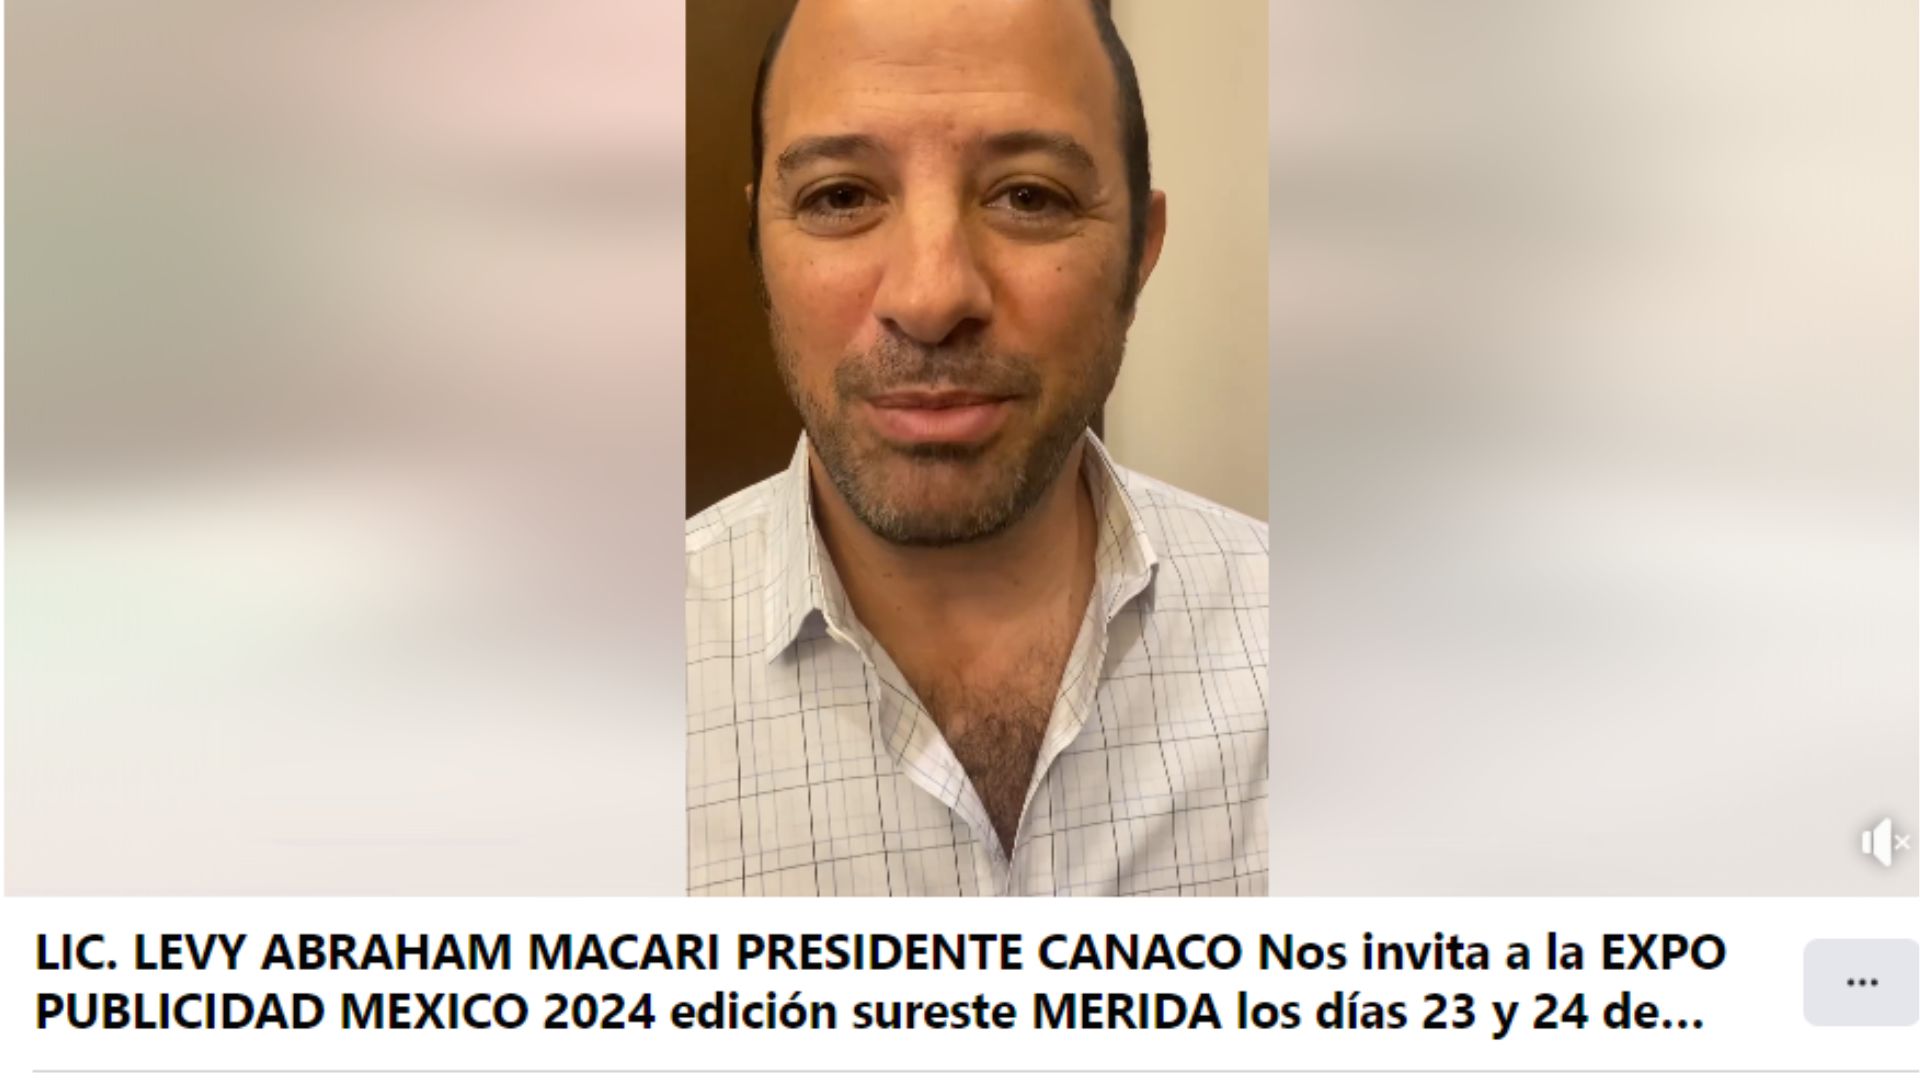 LIC. LEVY ABRAHAM MACARI PRESIDENTE CANACO Nos invita a la EXPO PUBLICIDAD MEXICO 2024 edición sureste MERIDA los días 23 y 24 de Febrero de 2024